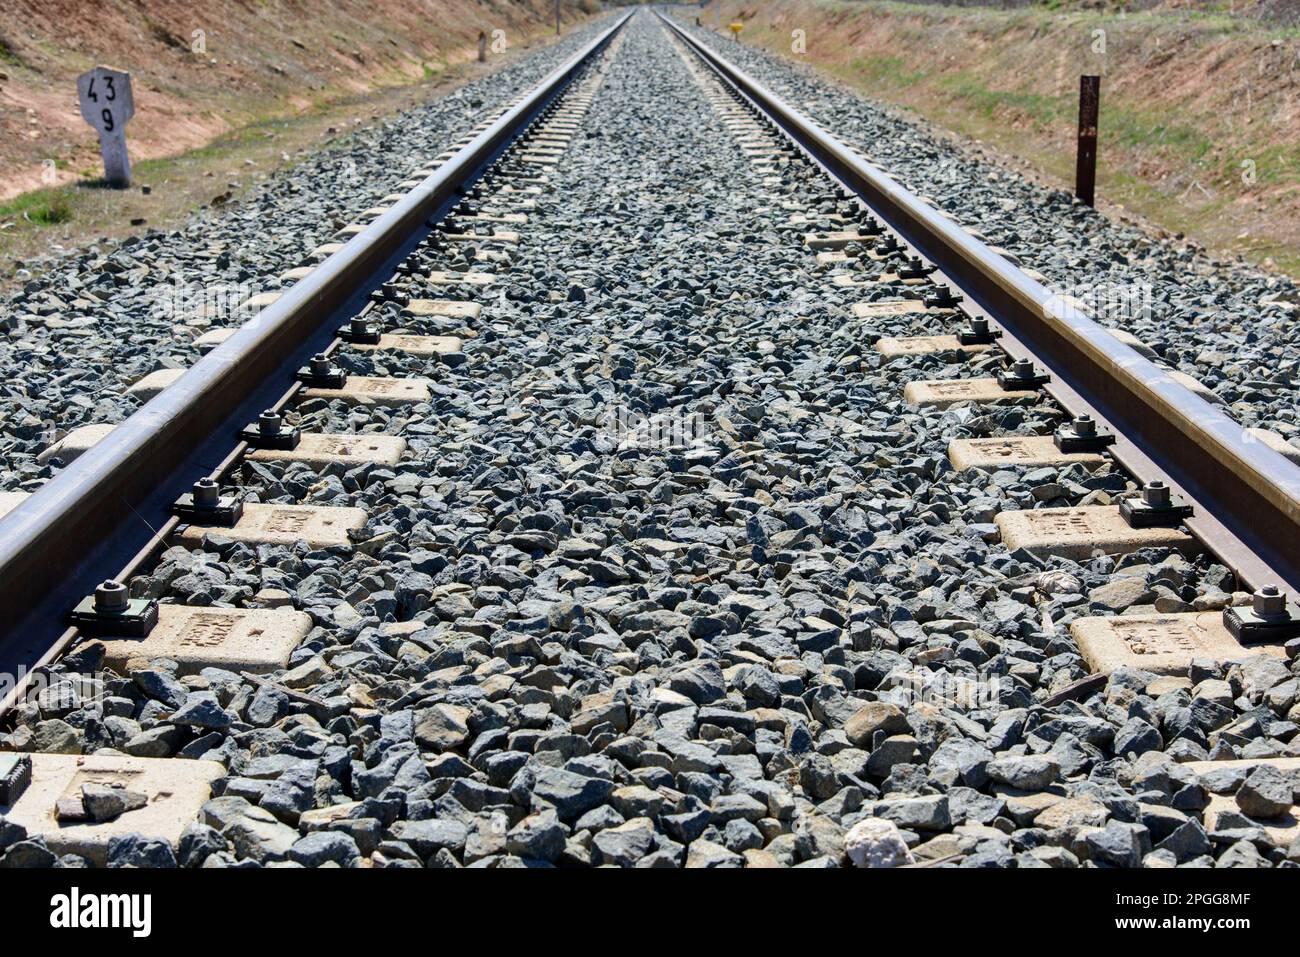 Detalle de una vía de ferrocarril desde un paso a nivel Stock Photo